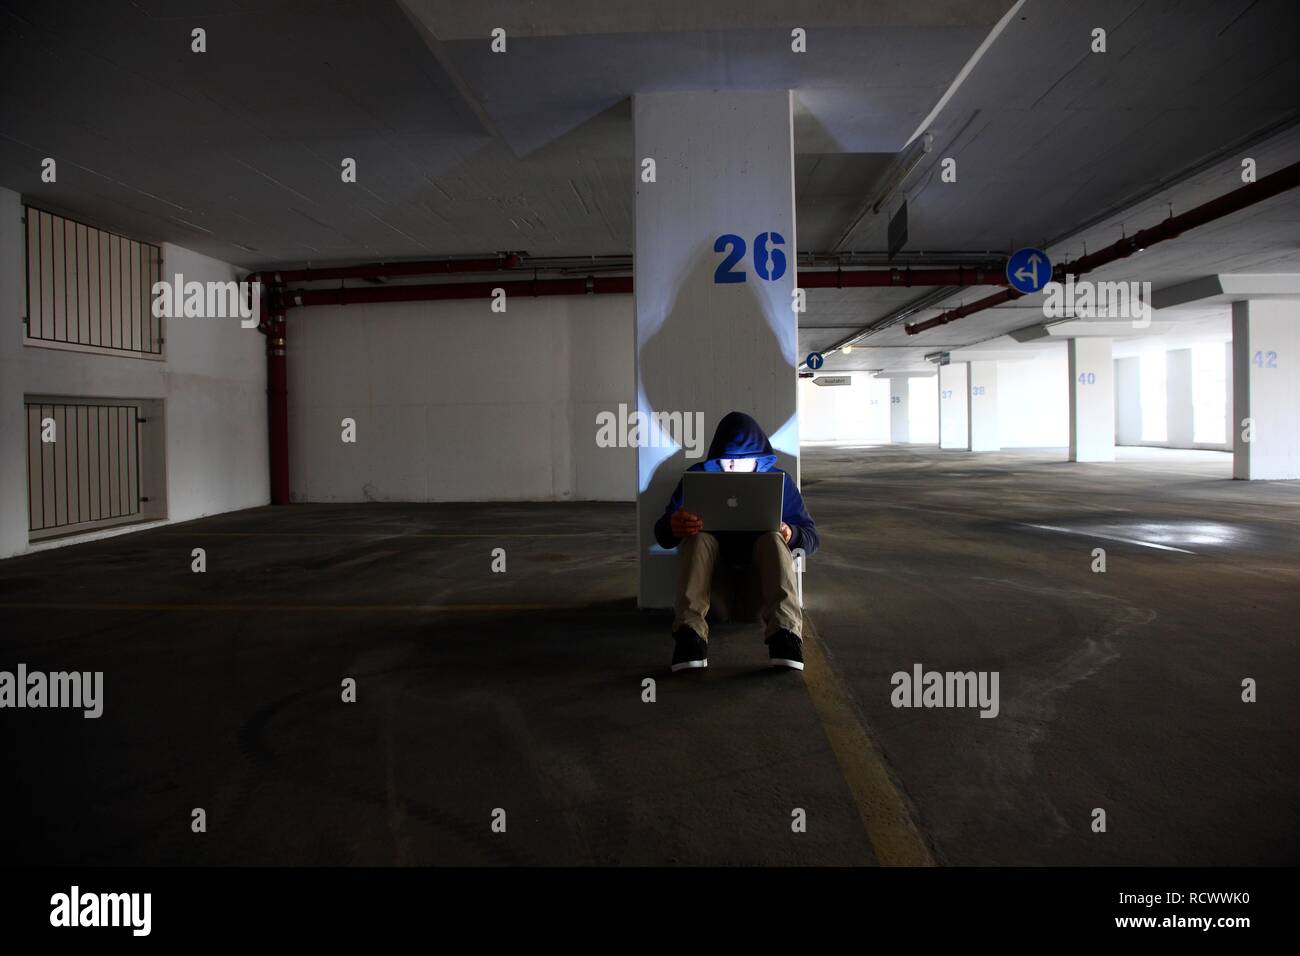 El hombre navegando en un ordenador portátil en un vacío estacionamiento de varios pisos, imagen simbólica para la piratería informática y delito informático Foto de stock